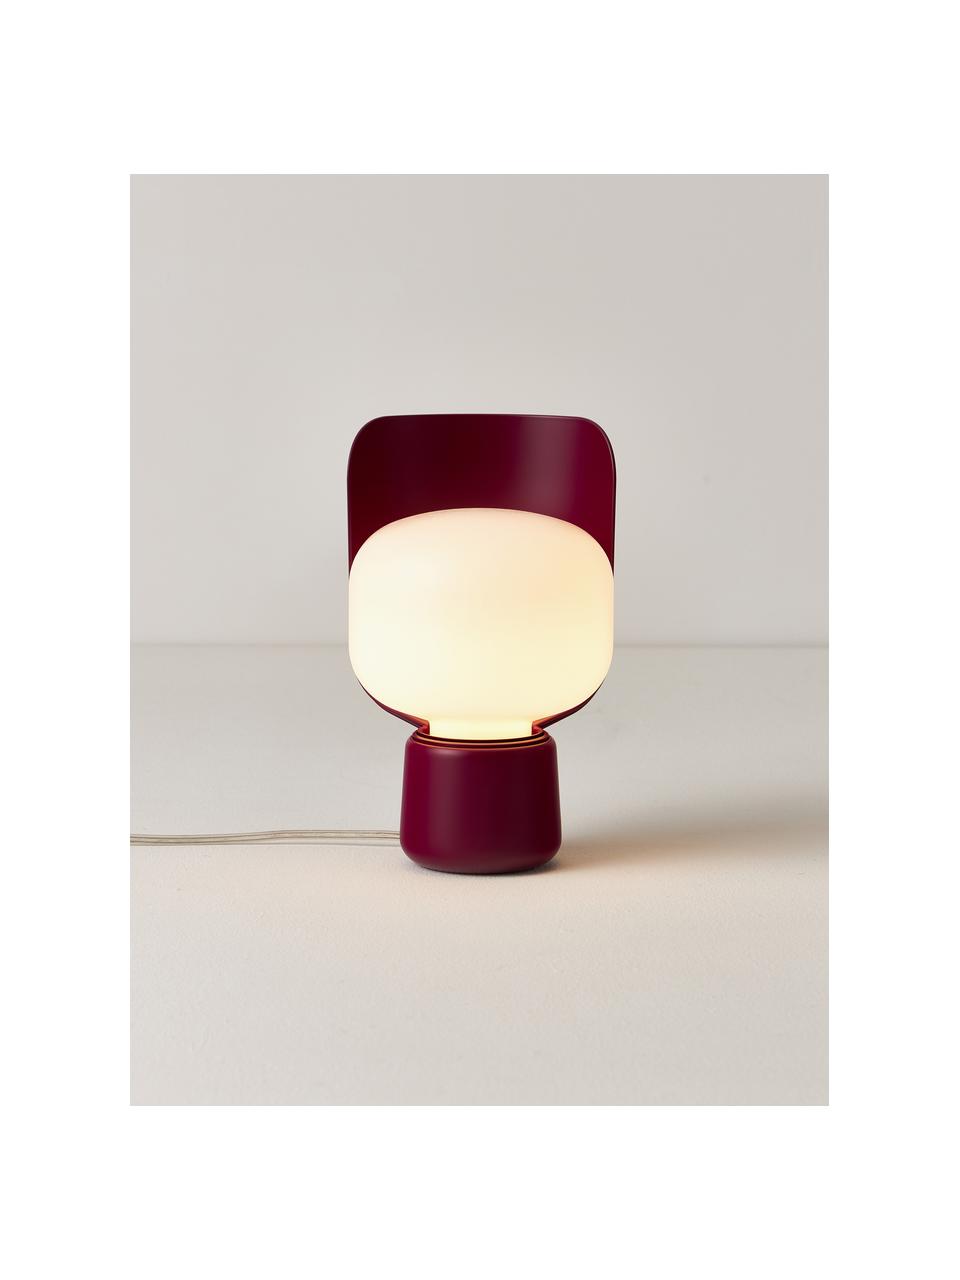 Malá stolní lampa Blom, ručně vyrobená, Bílá, švestková, Ø 15 cm, V 24 cm